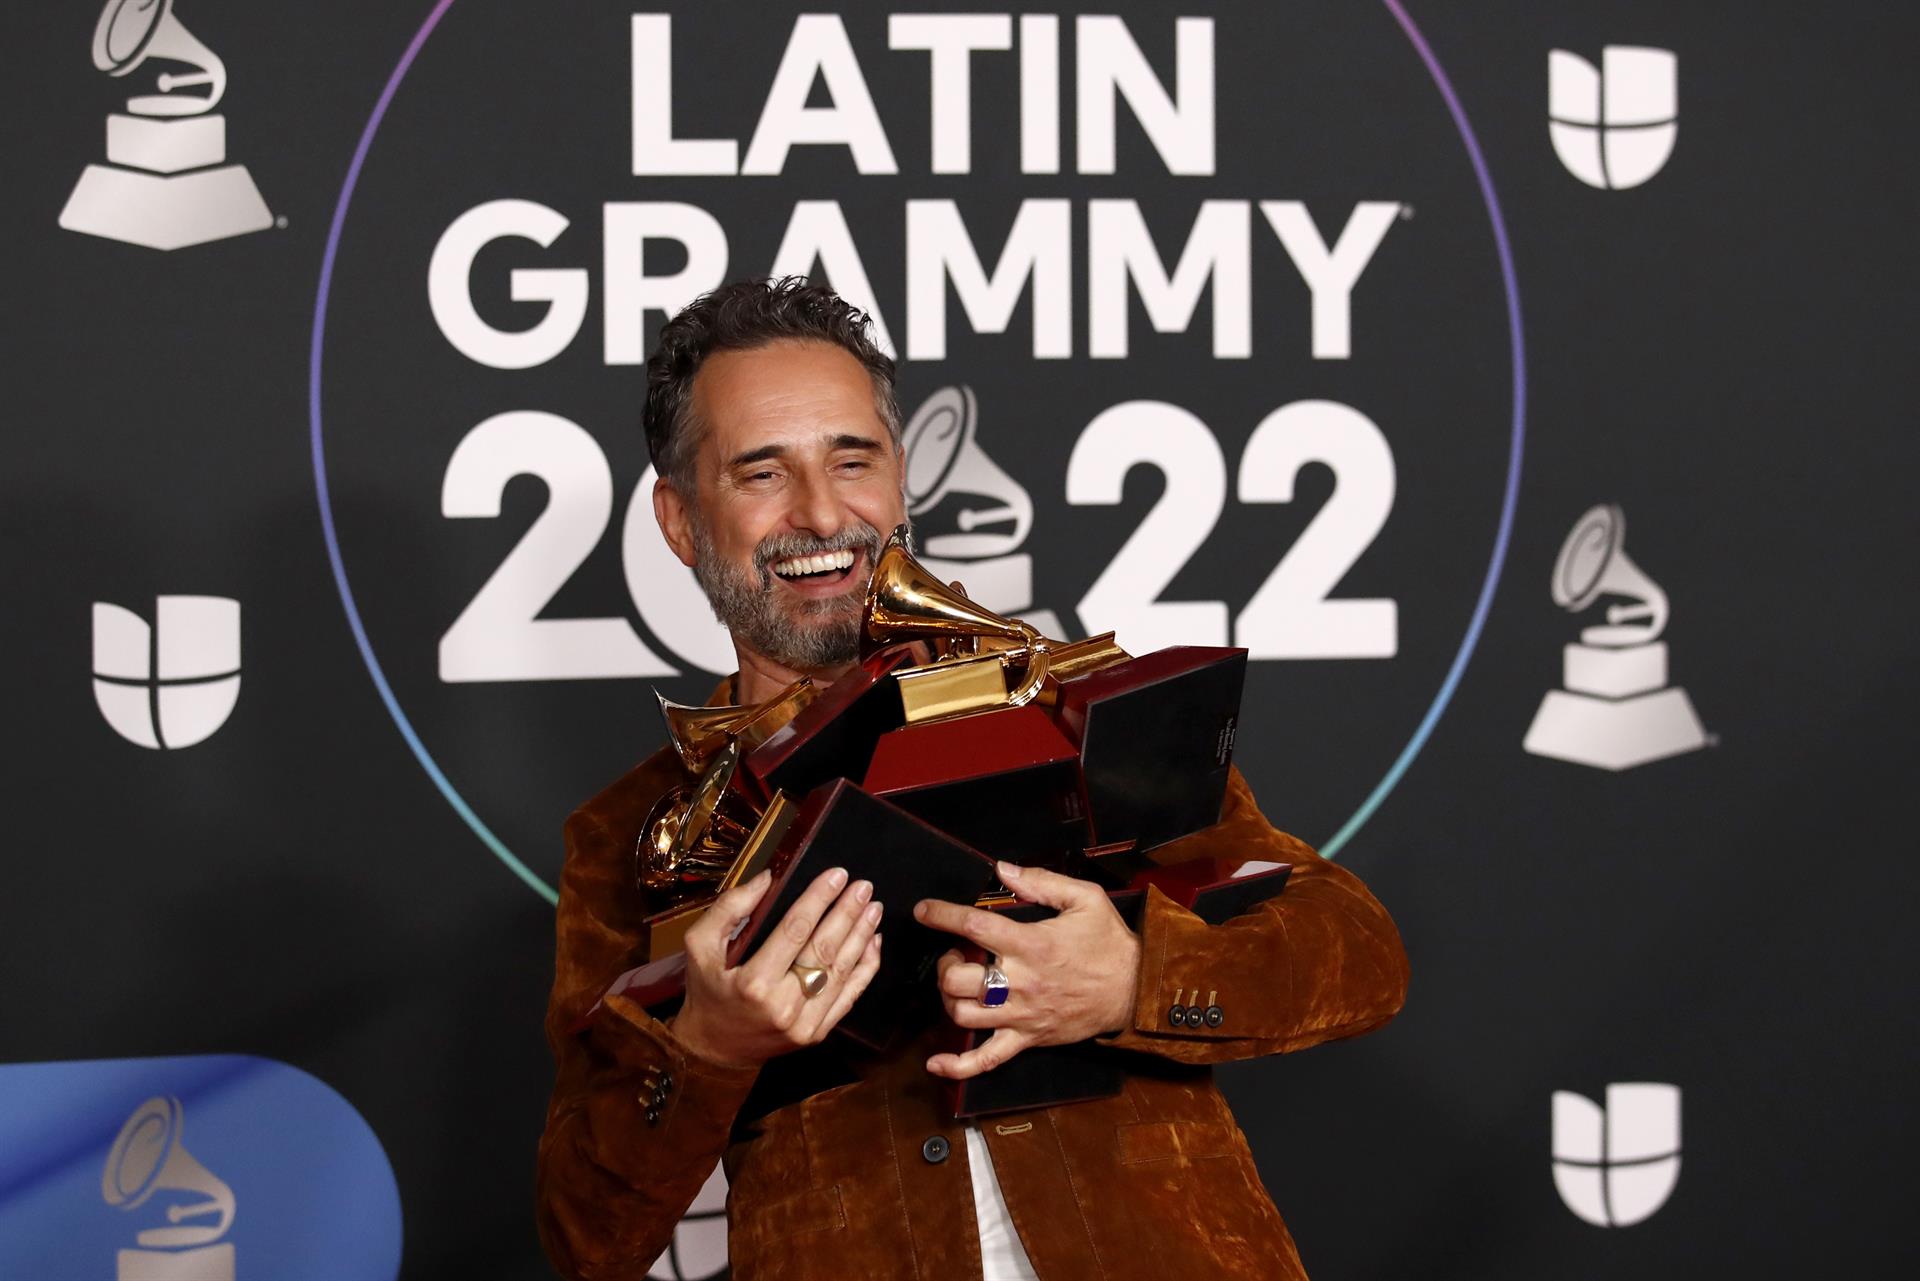 Guanyadors dels Latin Grammy 2022: Rosalía, Bad Bunny i tots els premis